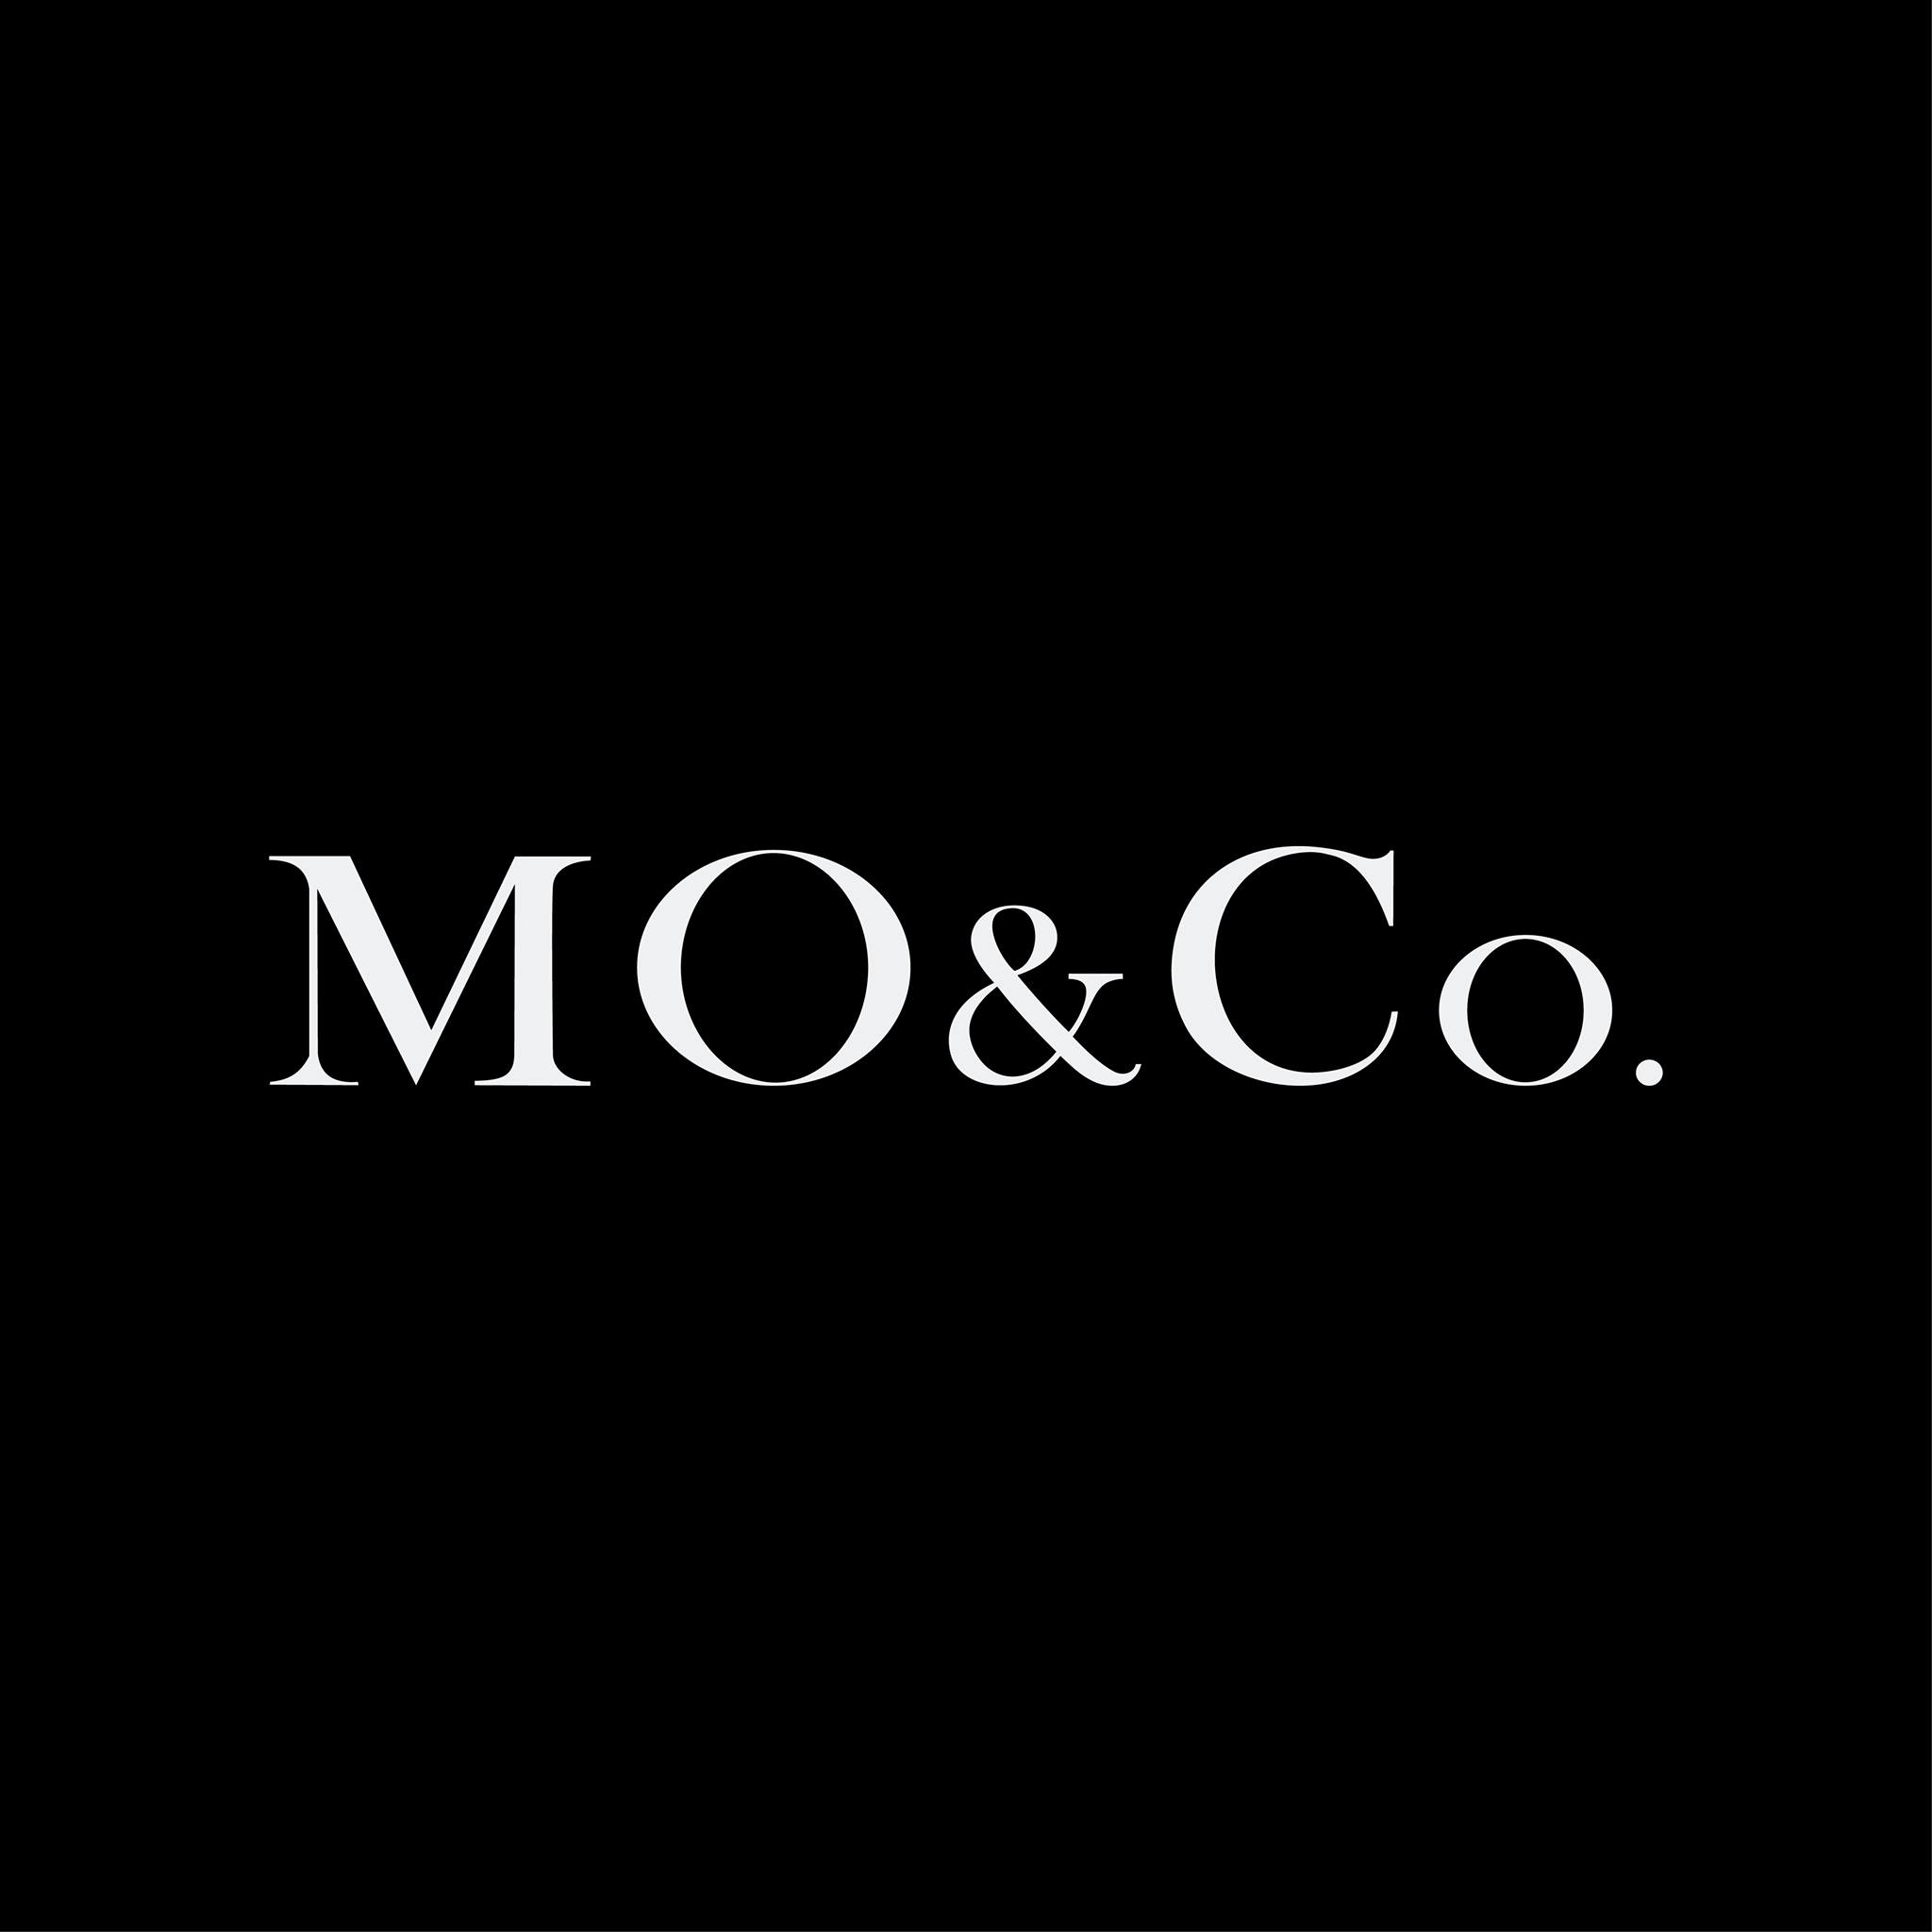 Mo & Co